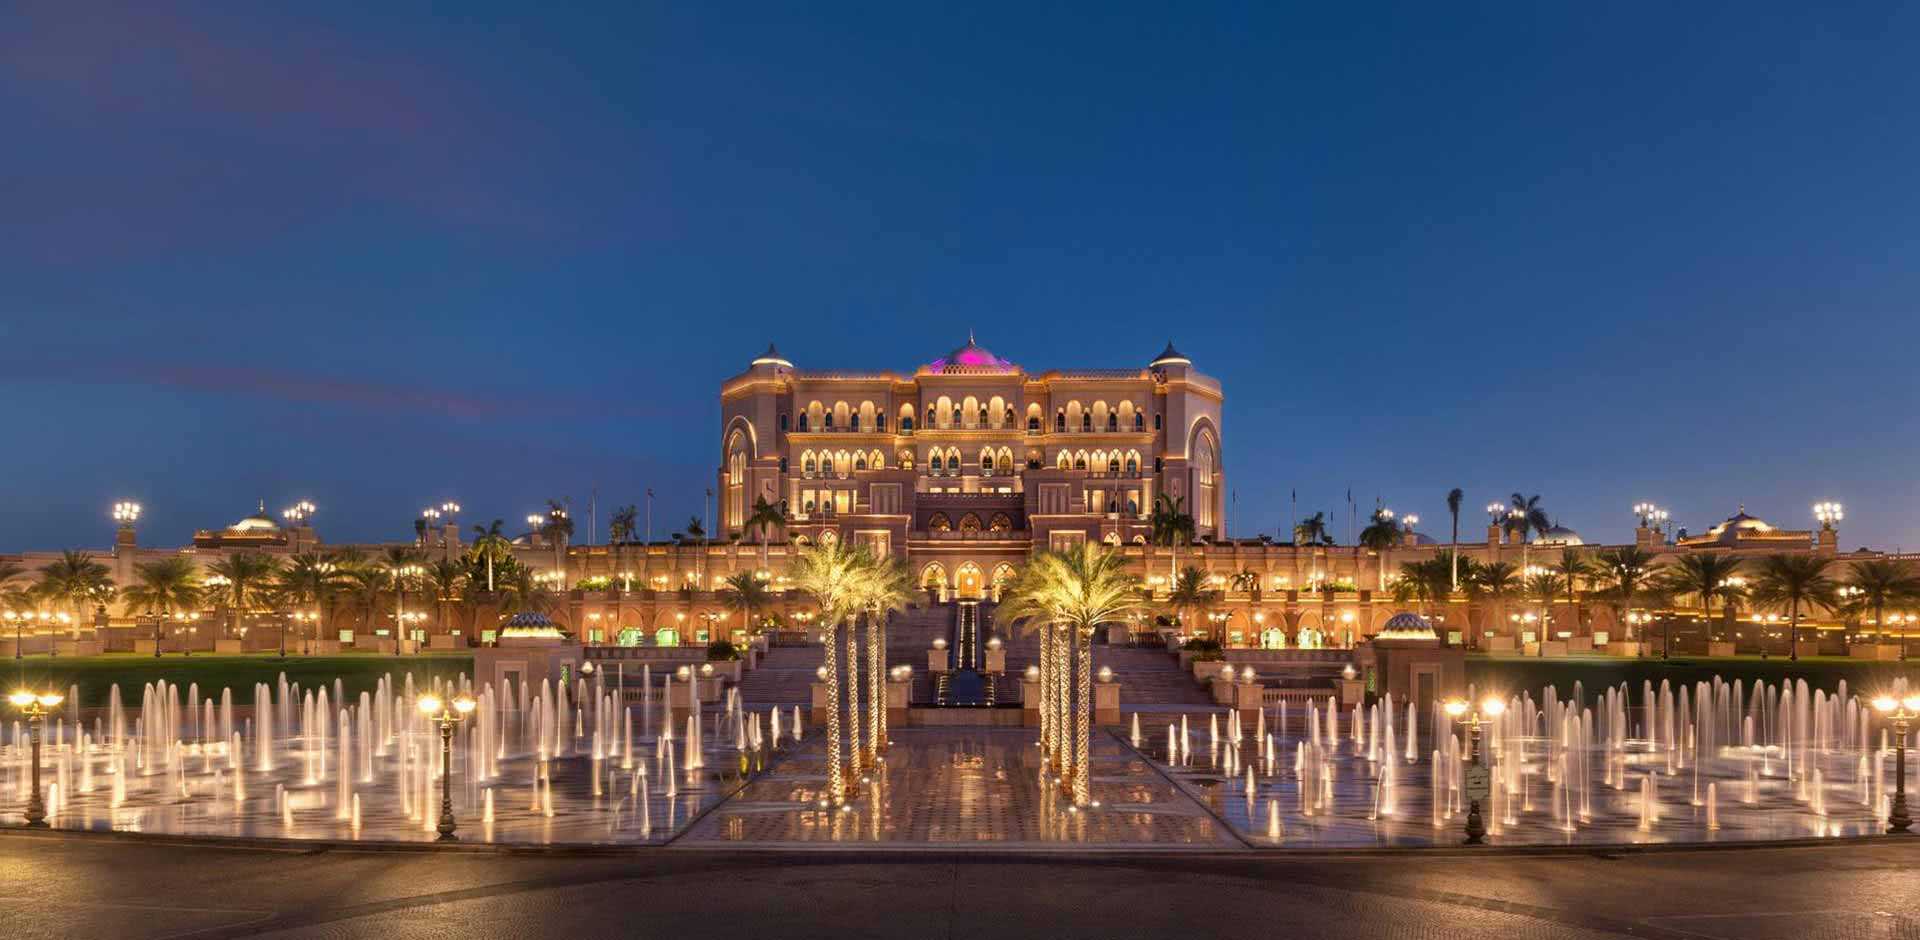 Emirates Palace Abu Dhabi Uae Luxury Hotels Resorts Remote Lands